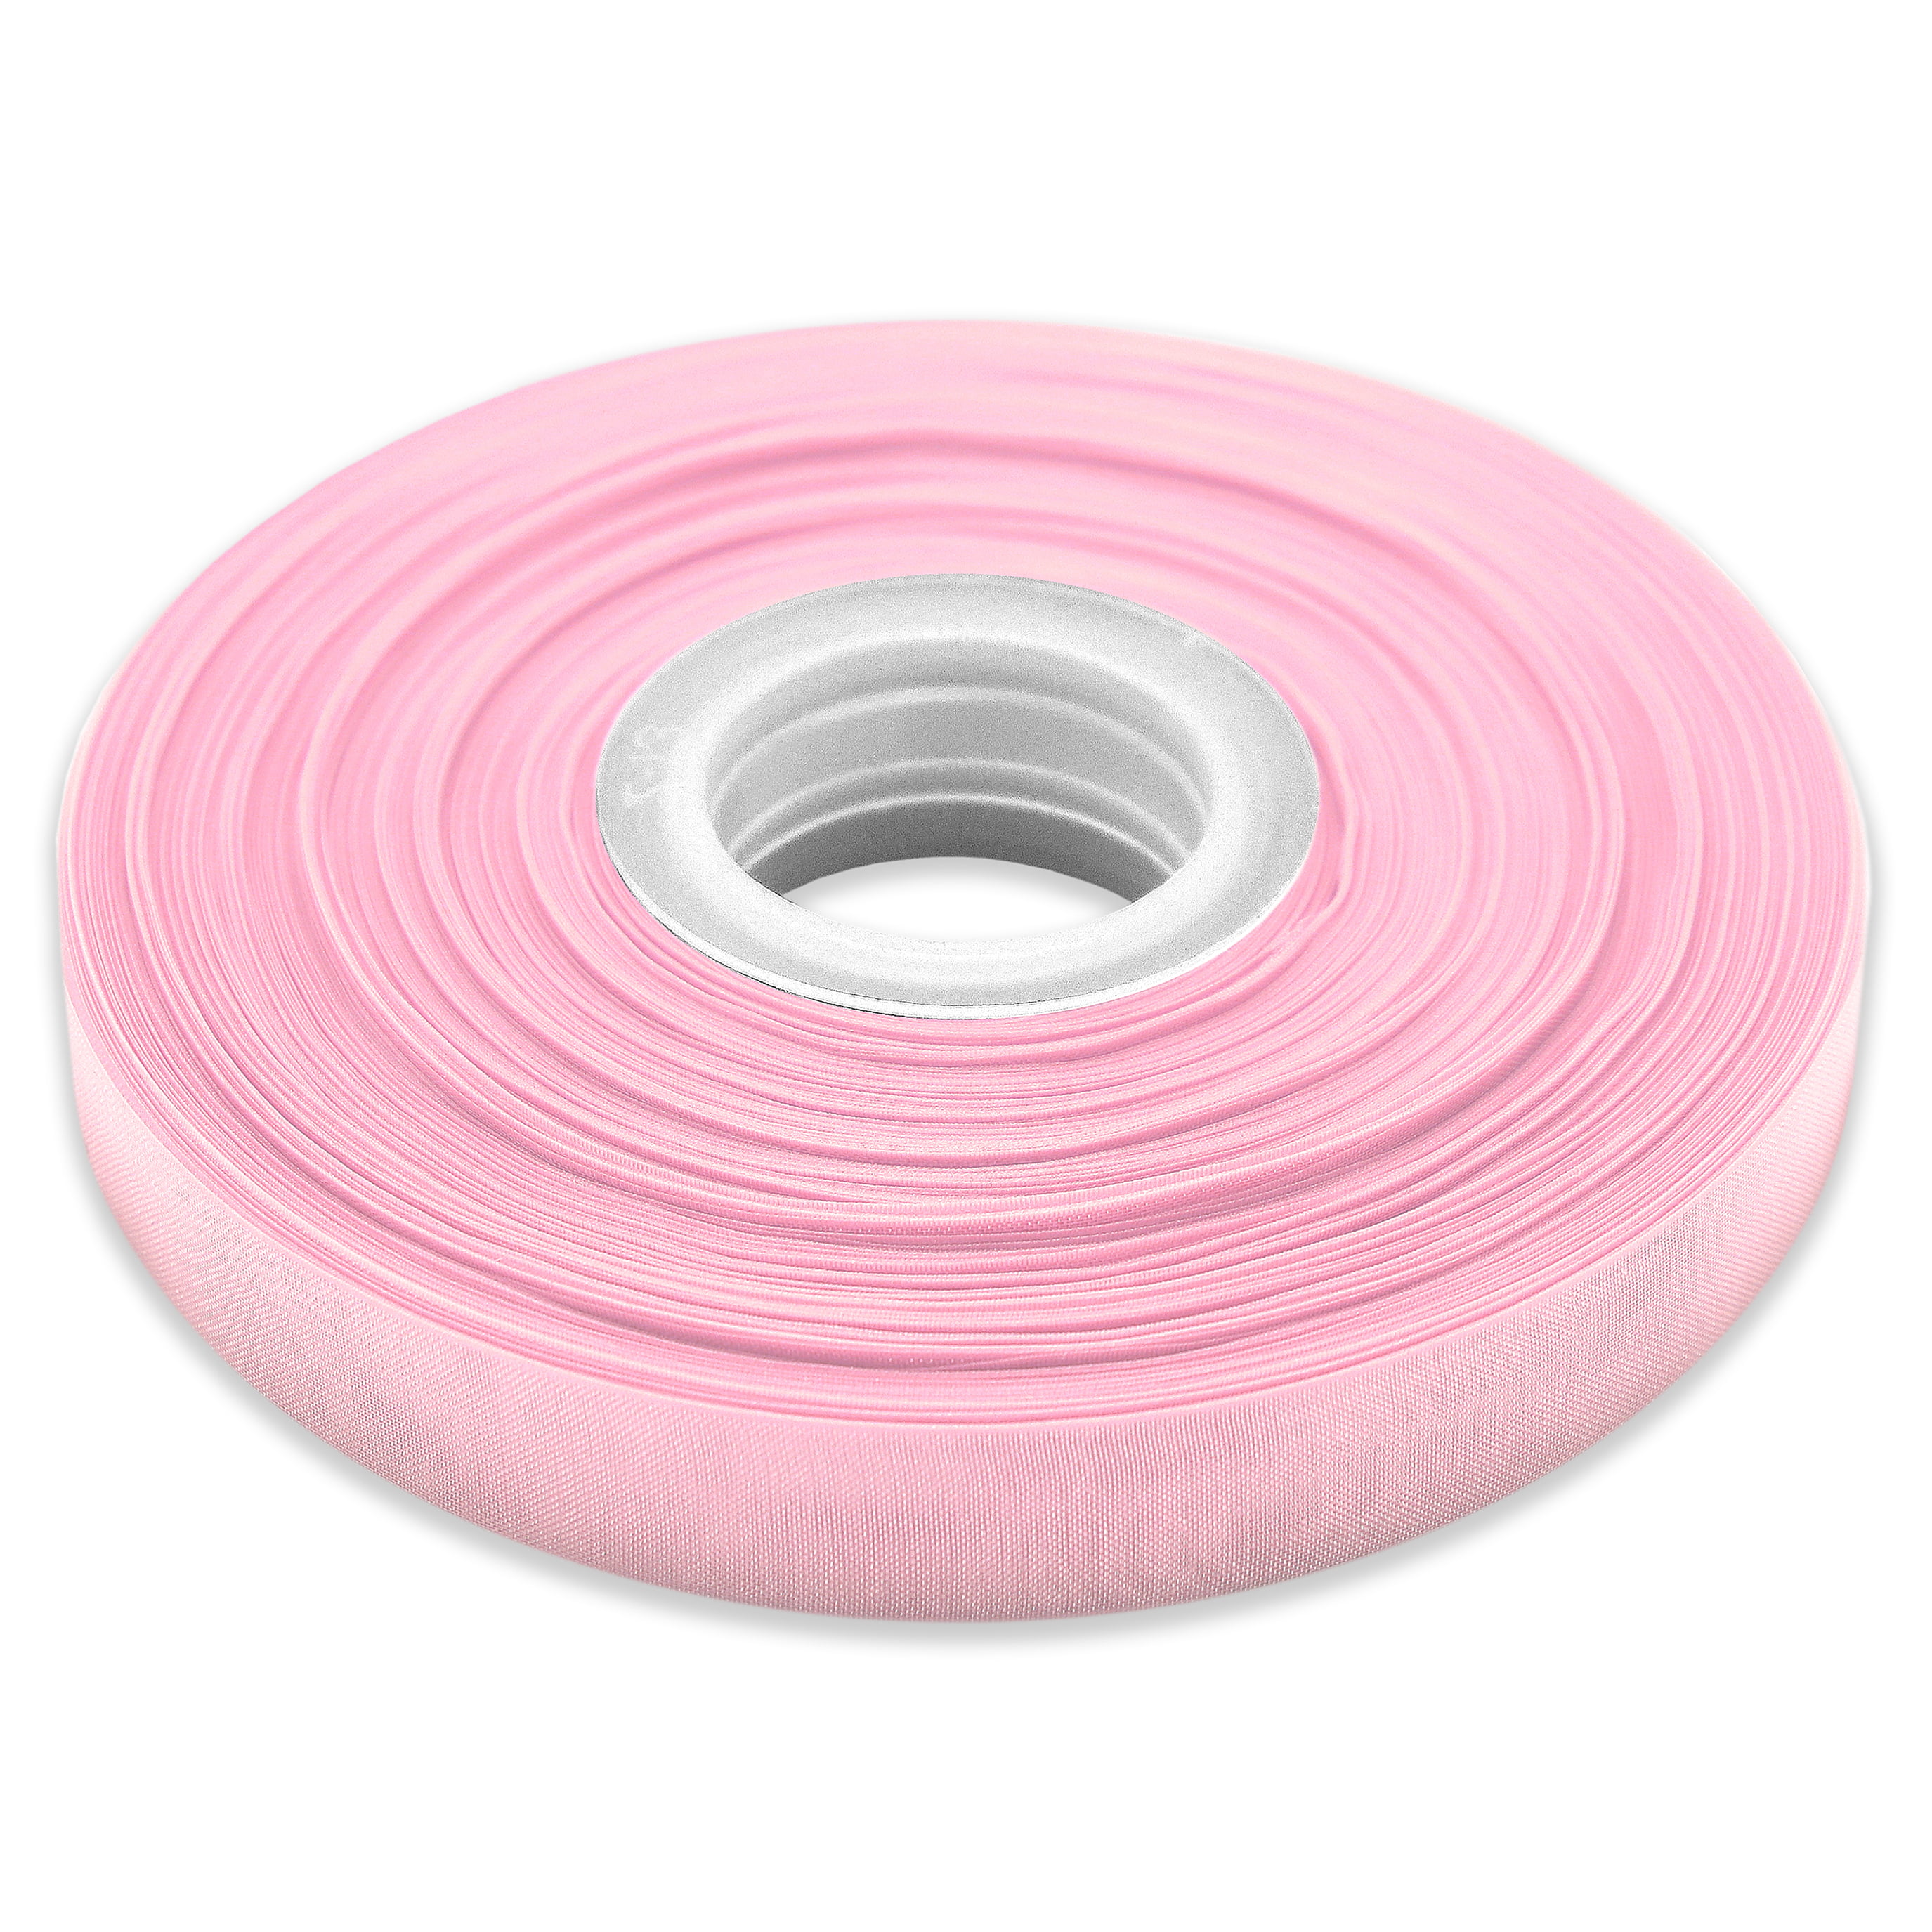 4 Rolls Organza Ribbon, Pink Chiffon Ribbon For Lmell Gift Wrapping, Sheer  Ribbon Gift